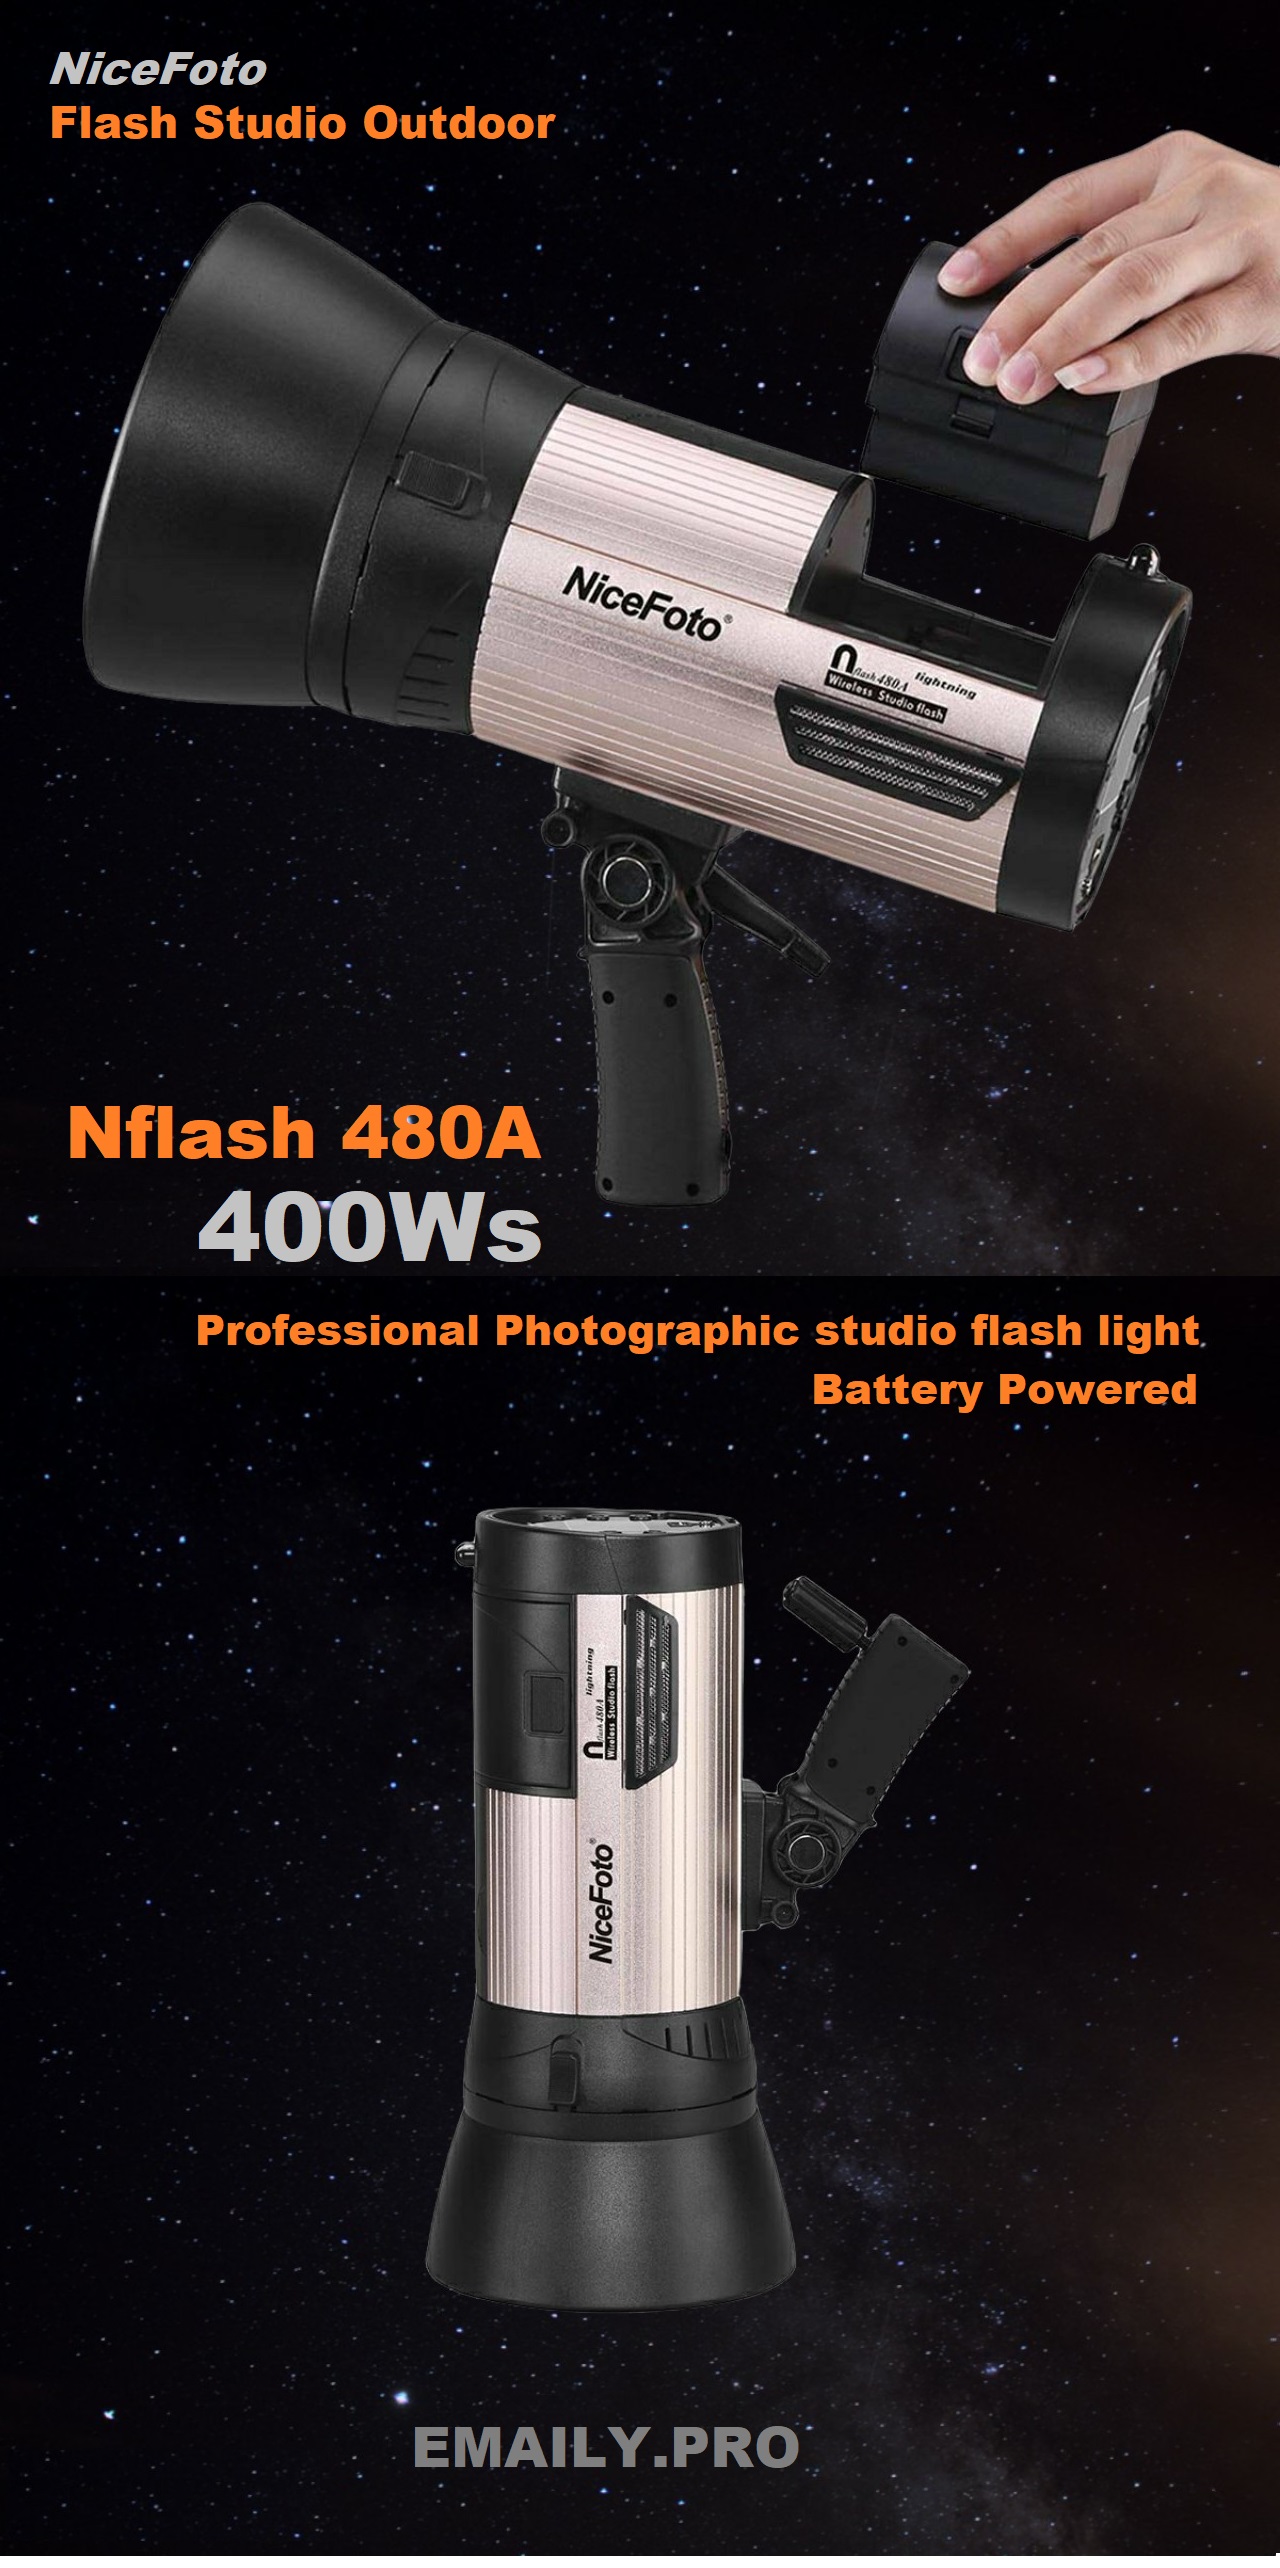 NiceFoto N-flash 480A Đèn flash studio chụp ảnh chuyên nghiệp